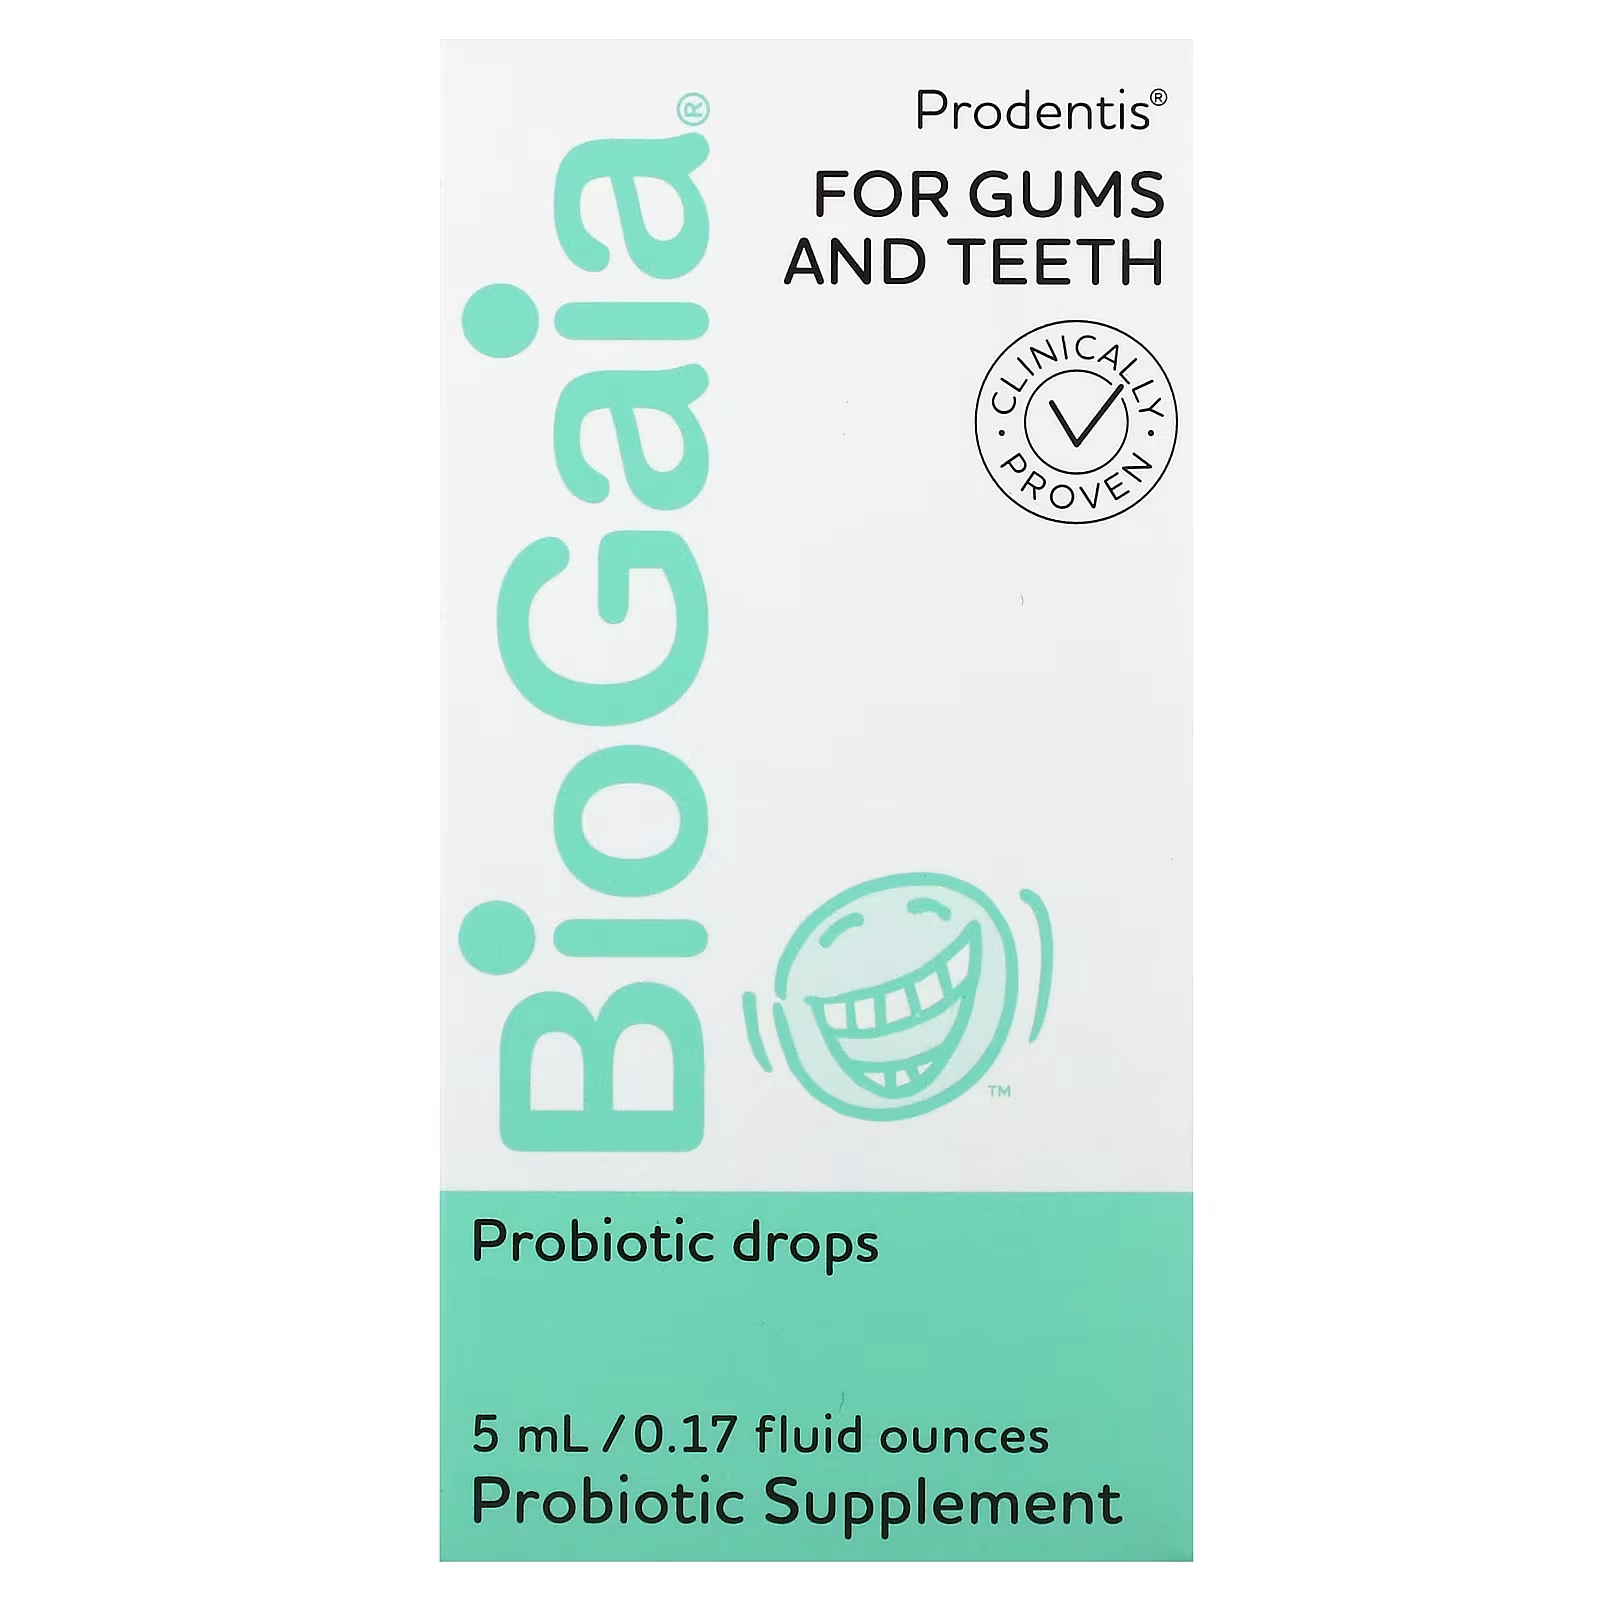 BioGaia Prodentis пробиотические капли для десен и зубов, 0,17 жидкой унции (5 мл) protectis baby пробиотические капли 0 17 жидкой унции 5 мл biogaia